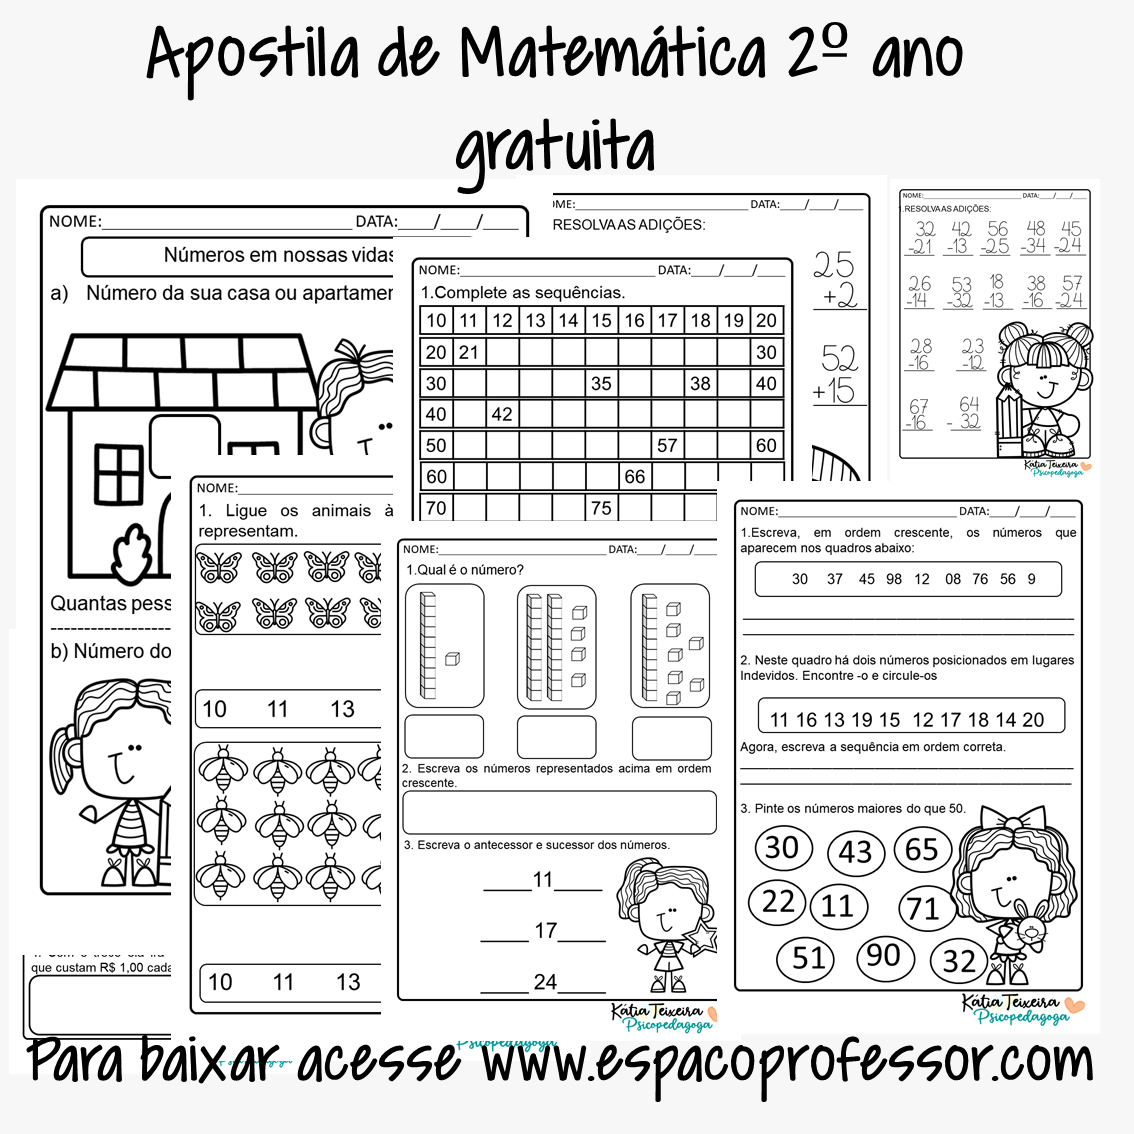 Apostila Matemática com 11 Atividades + 1 Jogo Pedagógico para